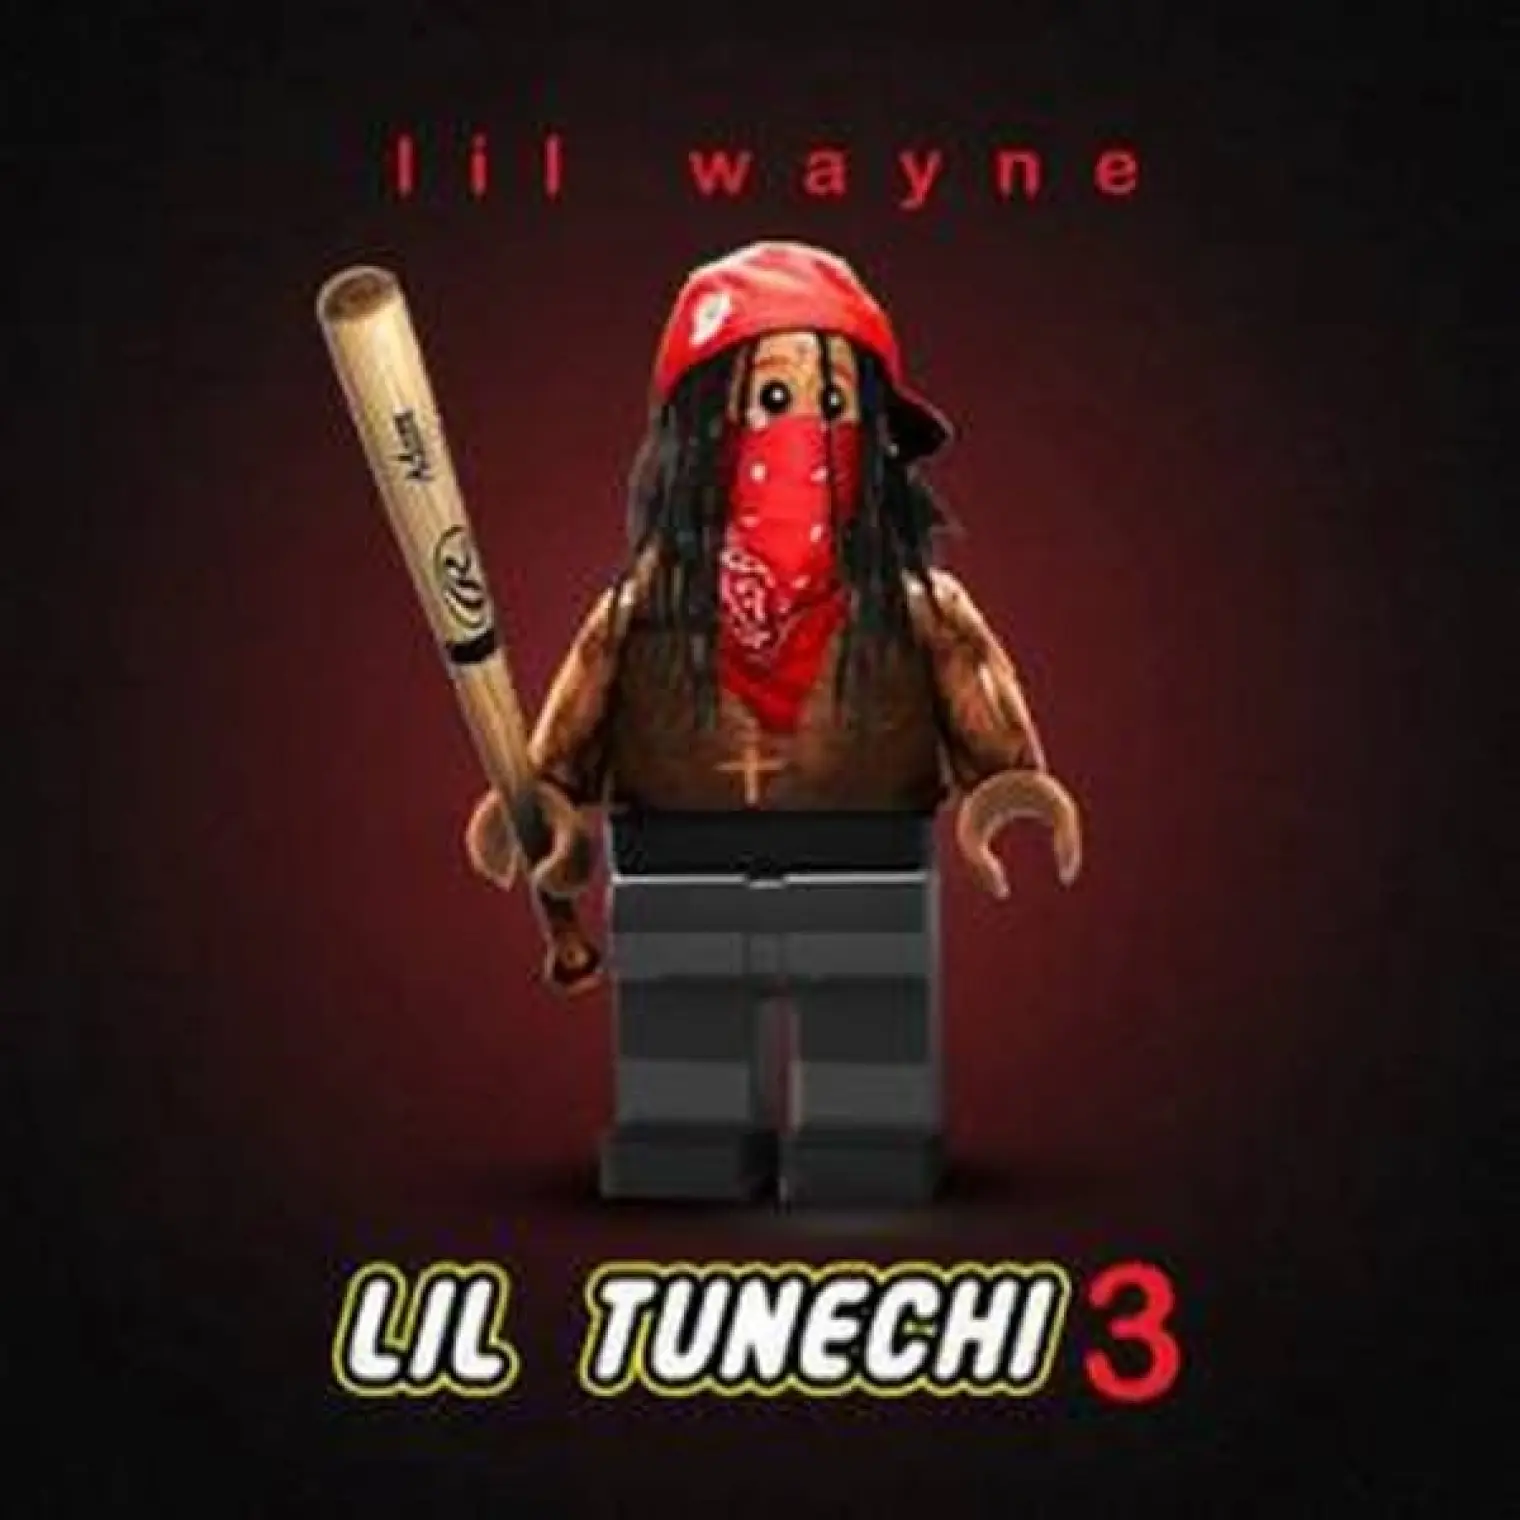 Lil Tunechi 3 -  Lil Wayne 